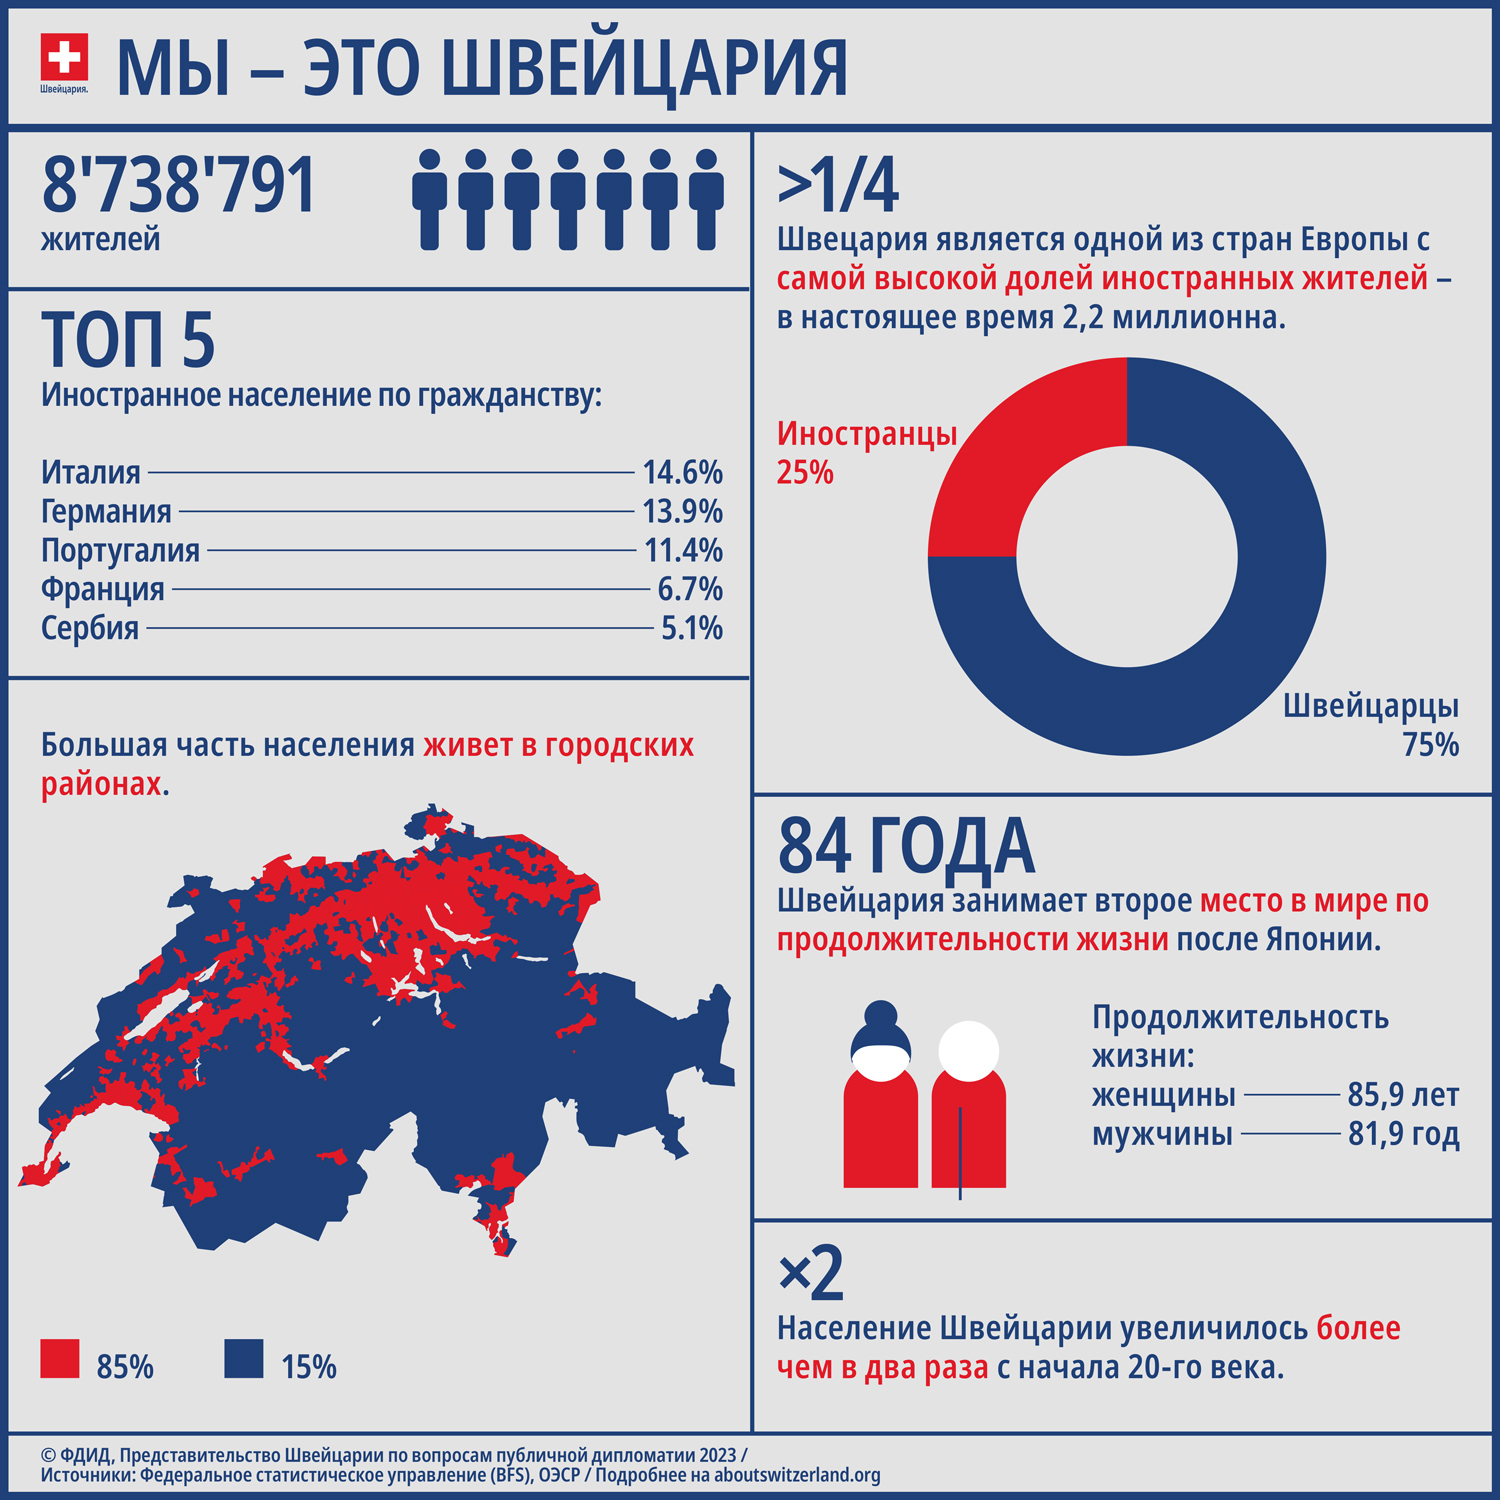 Инфографика показывает ключевые данные о населении Швейцарии.